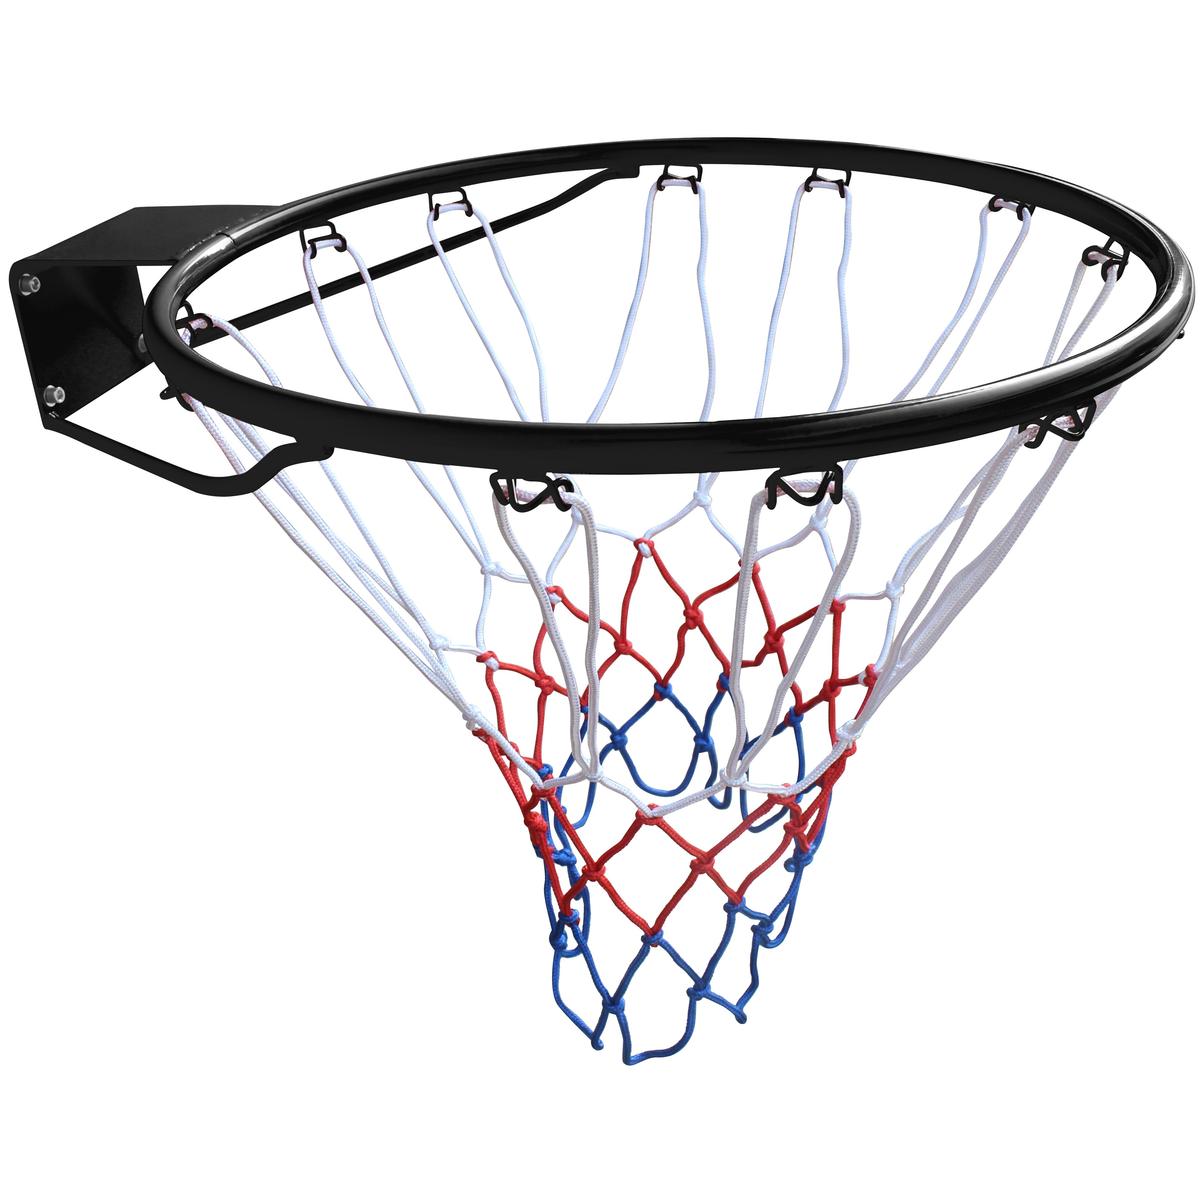 Basketbalová síť ENERO pro obruč s 12 háčky, černá